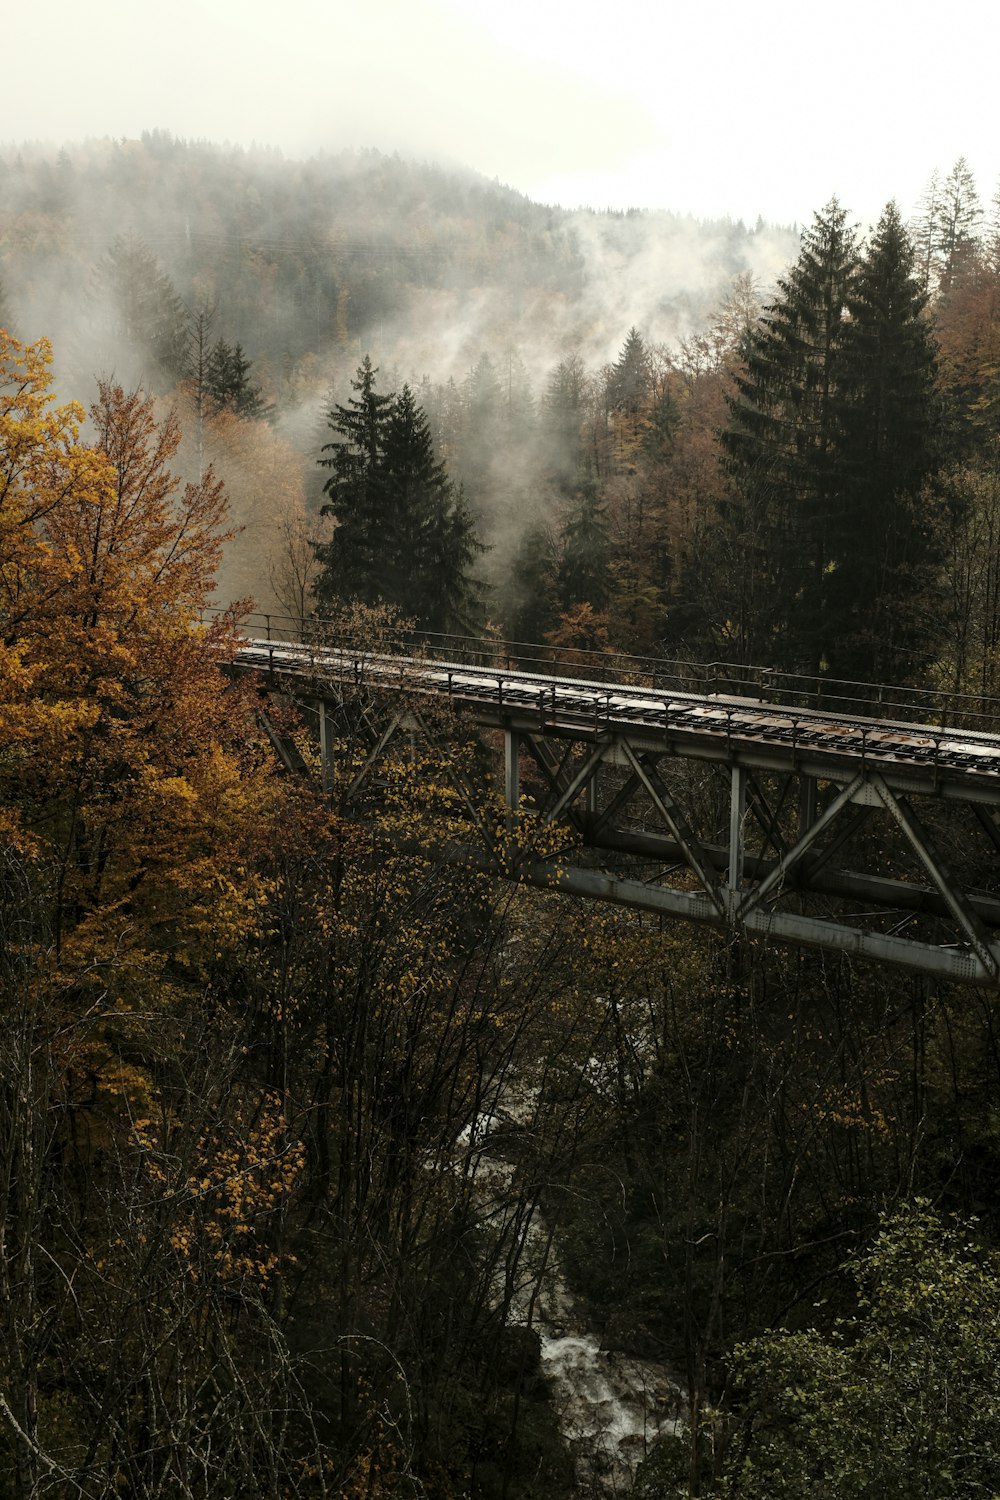 川に架かる灰色の金属橋